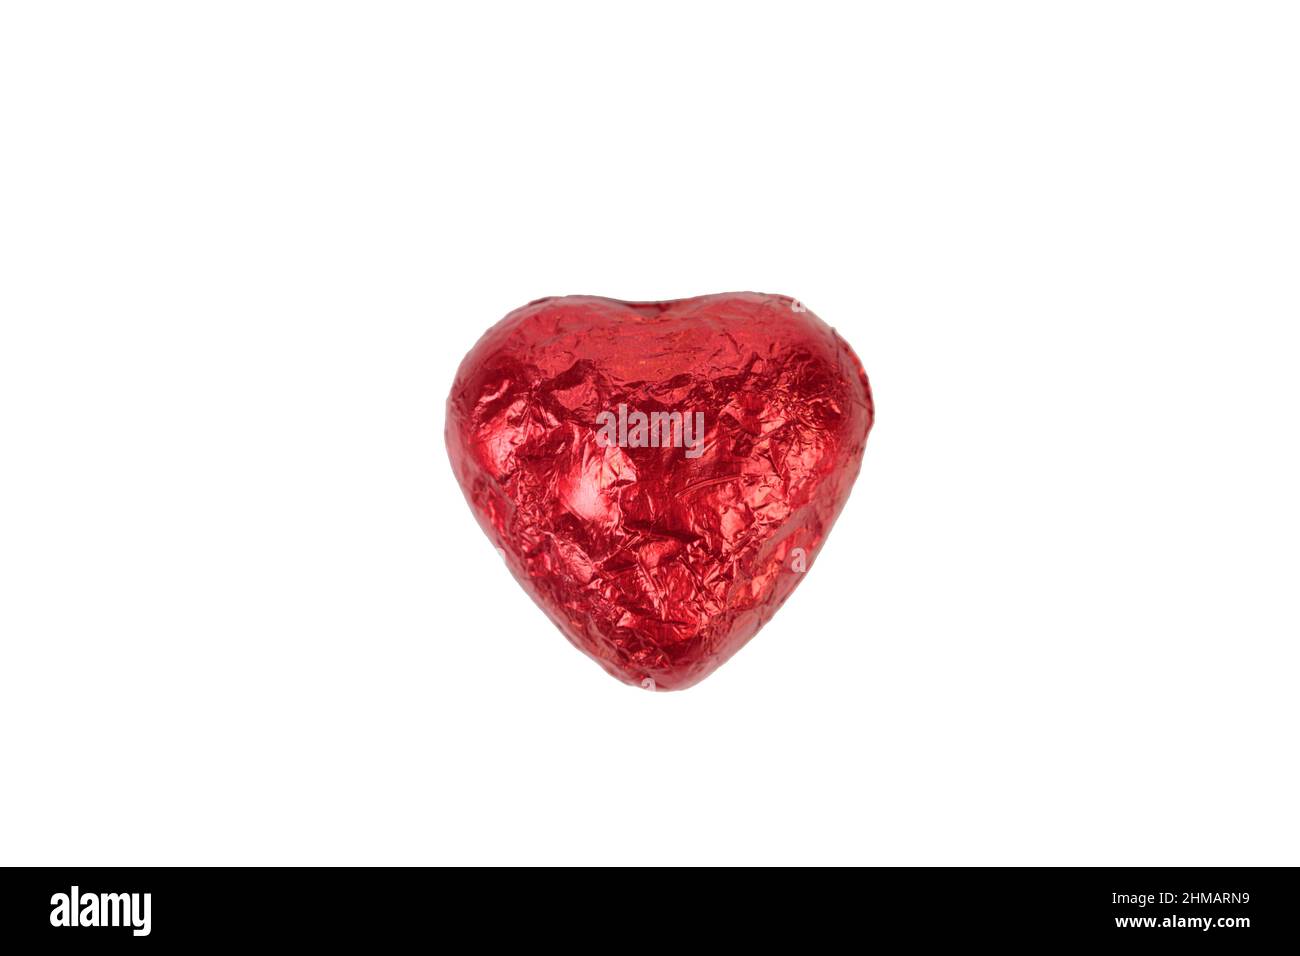 Bonbons au chocolat en forme de coeur enveloppés de papier d'aluminium rouge. Isolé sur fond blanc. Gros plan. Banque D'Images